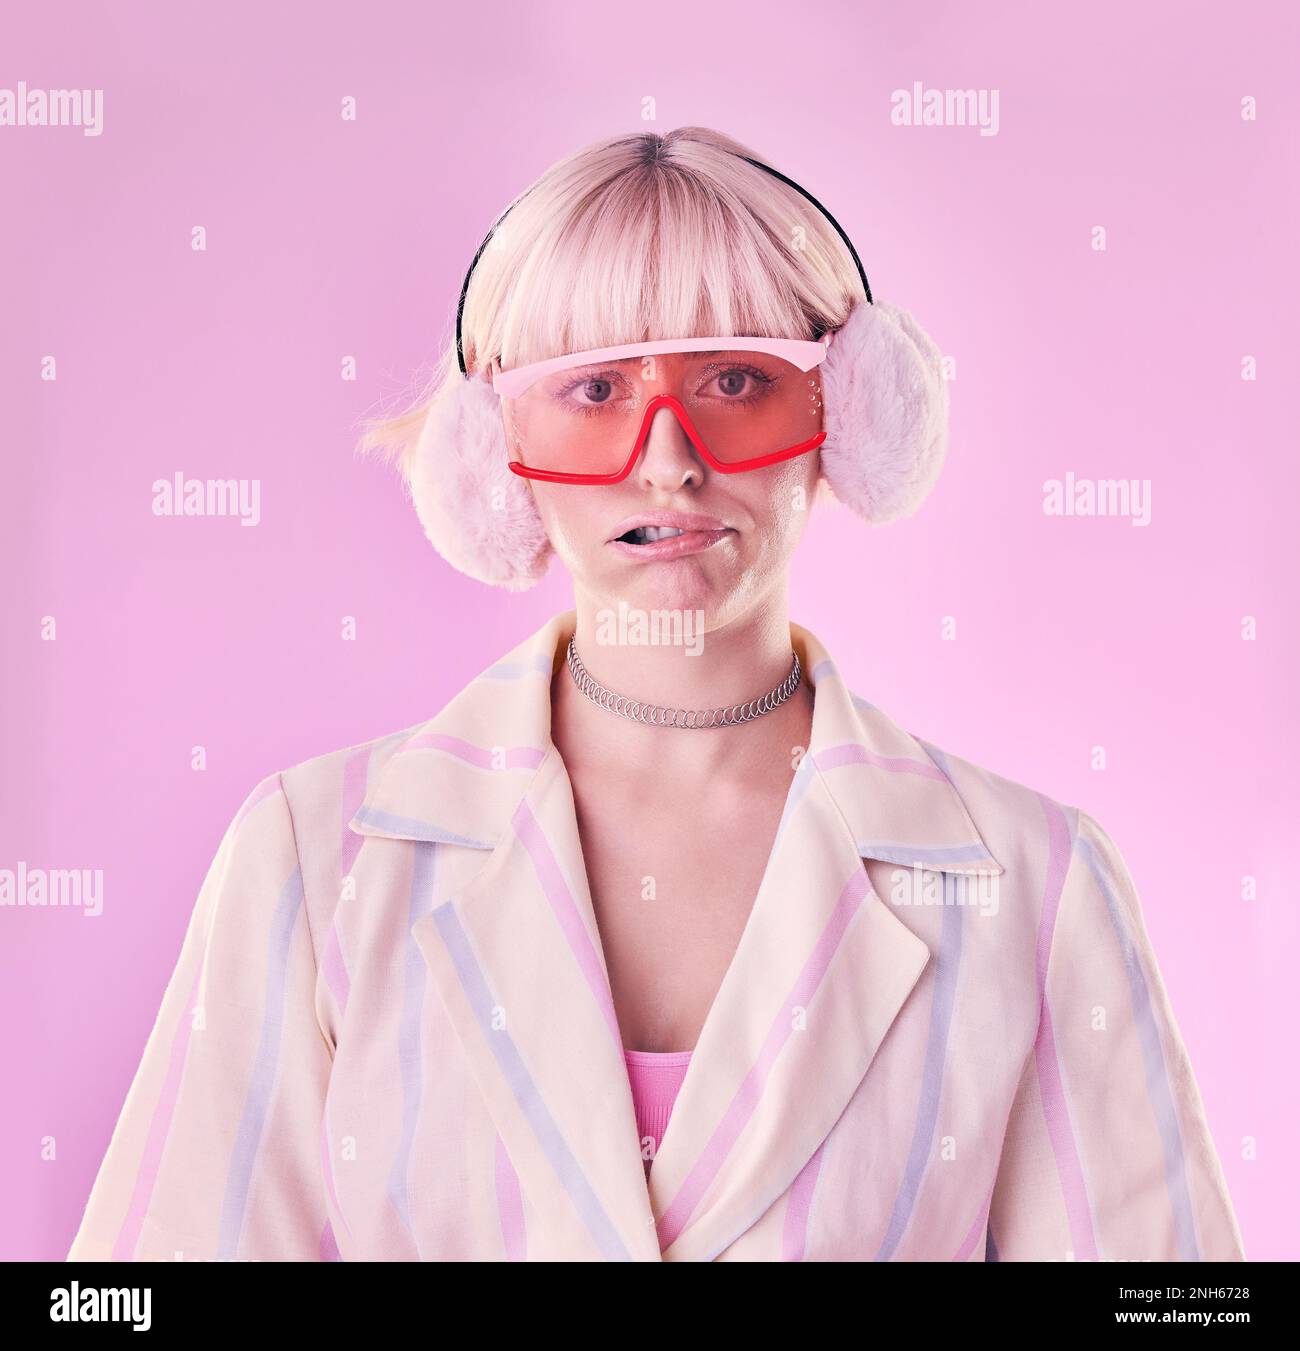 Mode, Eigenart und Porträt einer Frau im Studio mit lustigem oder komischem Gesicht auf pinkfarbenem Hintergrund. Ästhetischer Modellmann mit Brille und Ohrenschützer für Edgy Stockfoto